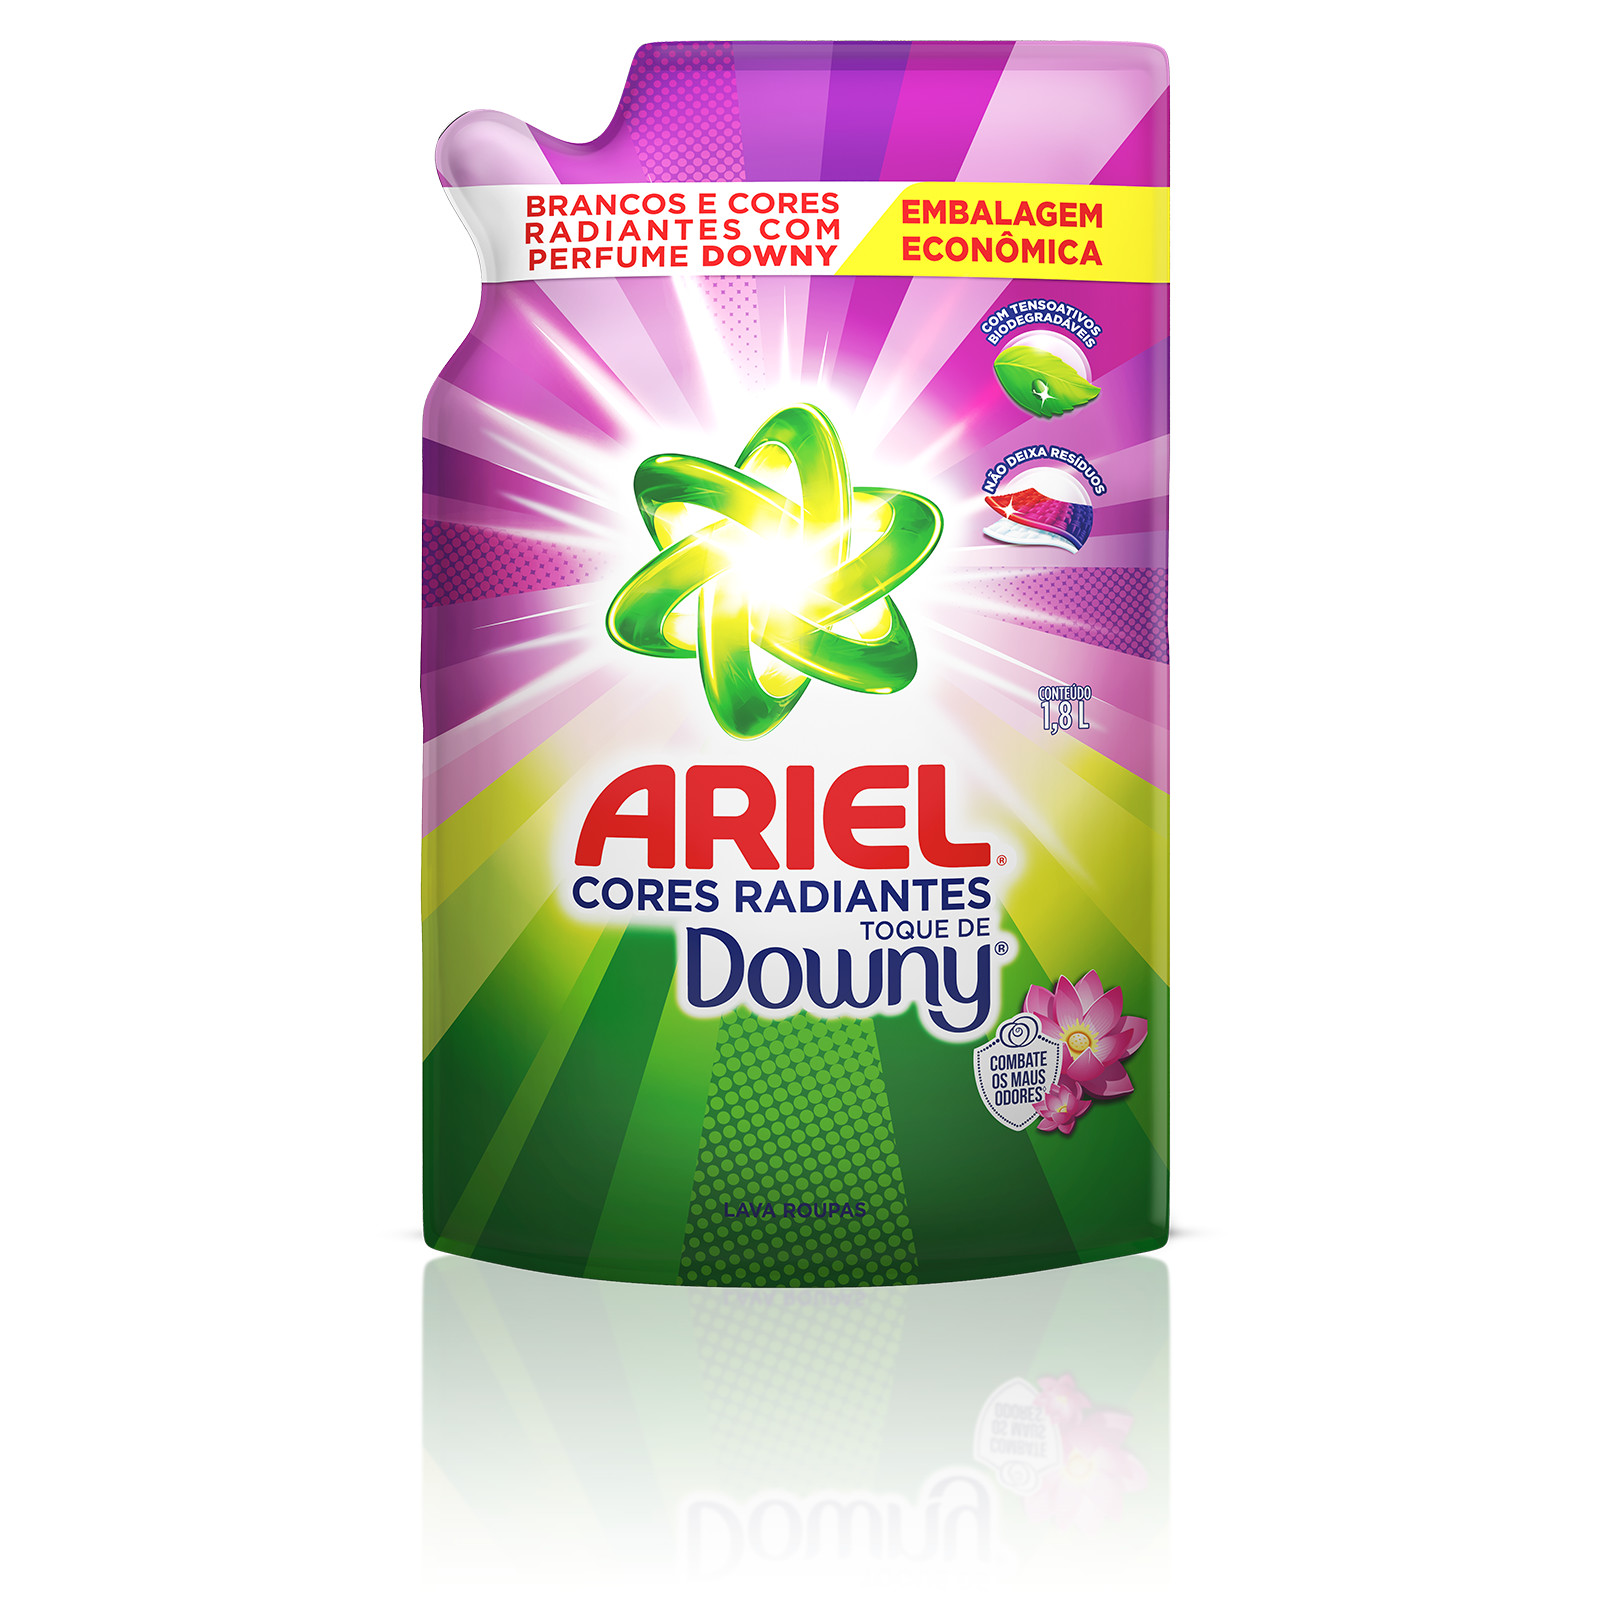 Ariel Cores Radiantes Toque de Downy - 1,8 Litros